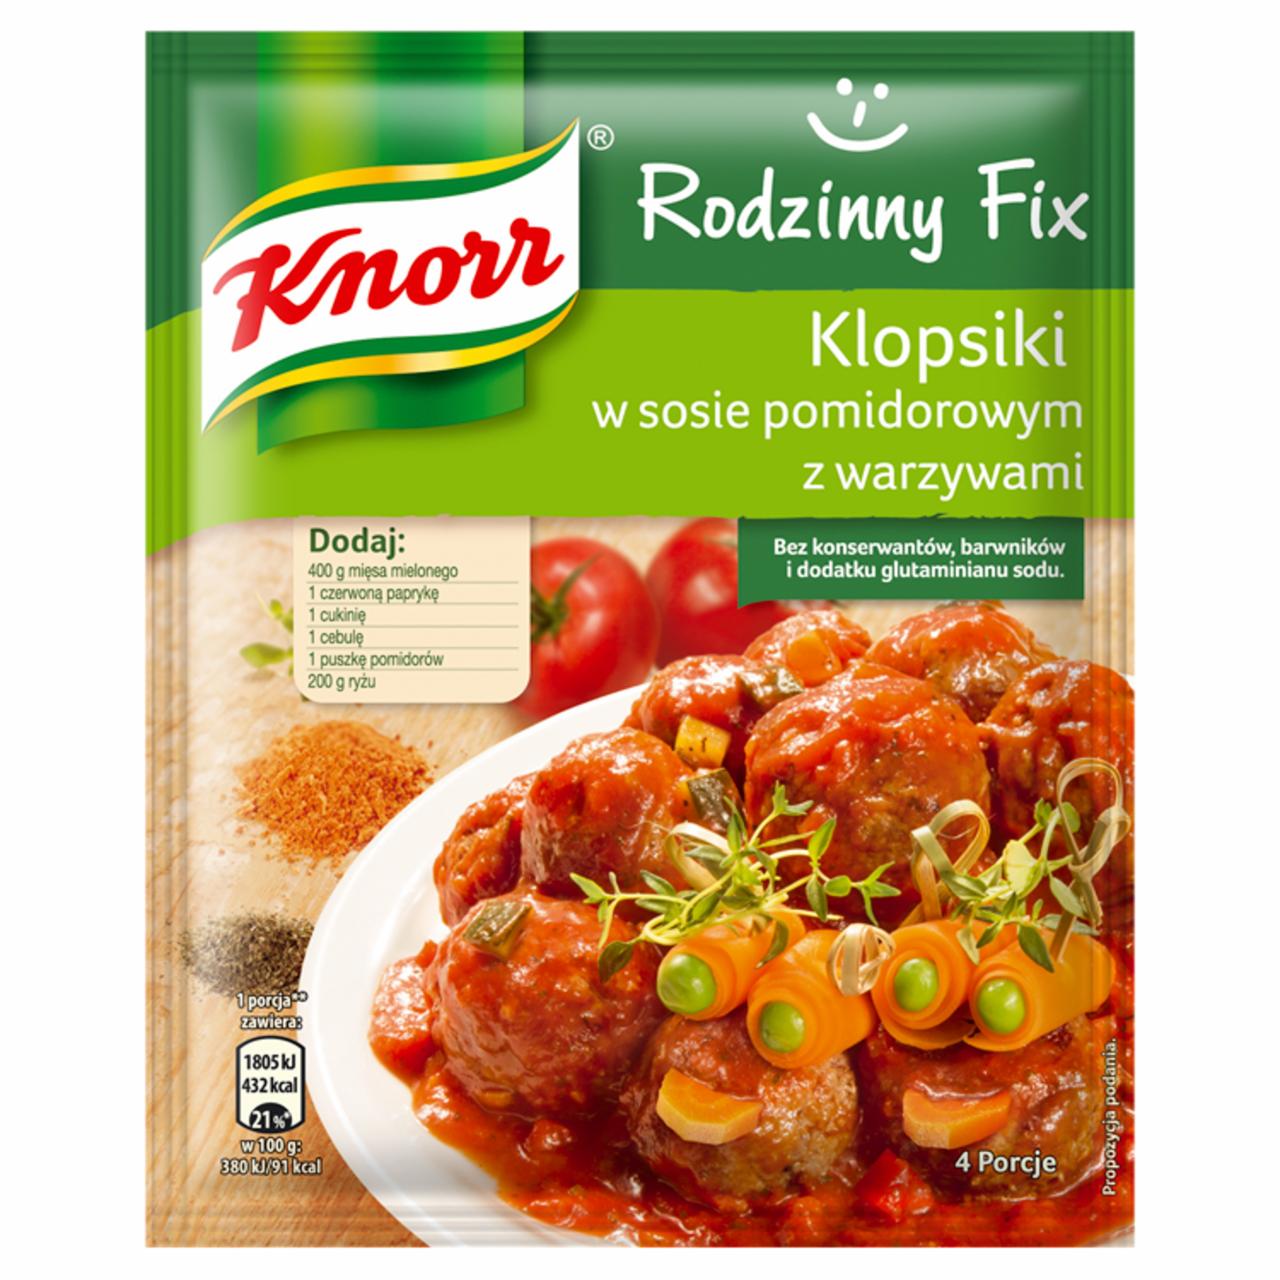 Zdjęcia - Knorr Rodzinny Fix Klopsiki w sosie pomidorowym z warzywami 48 g